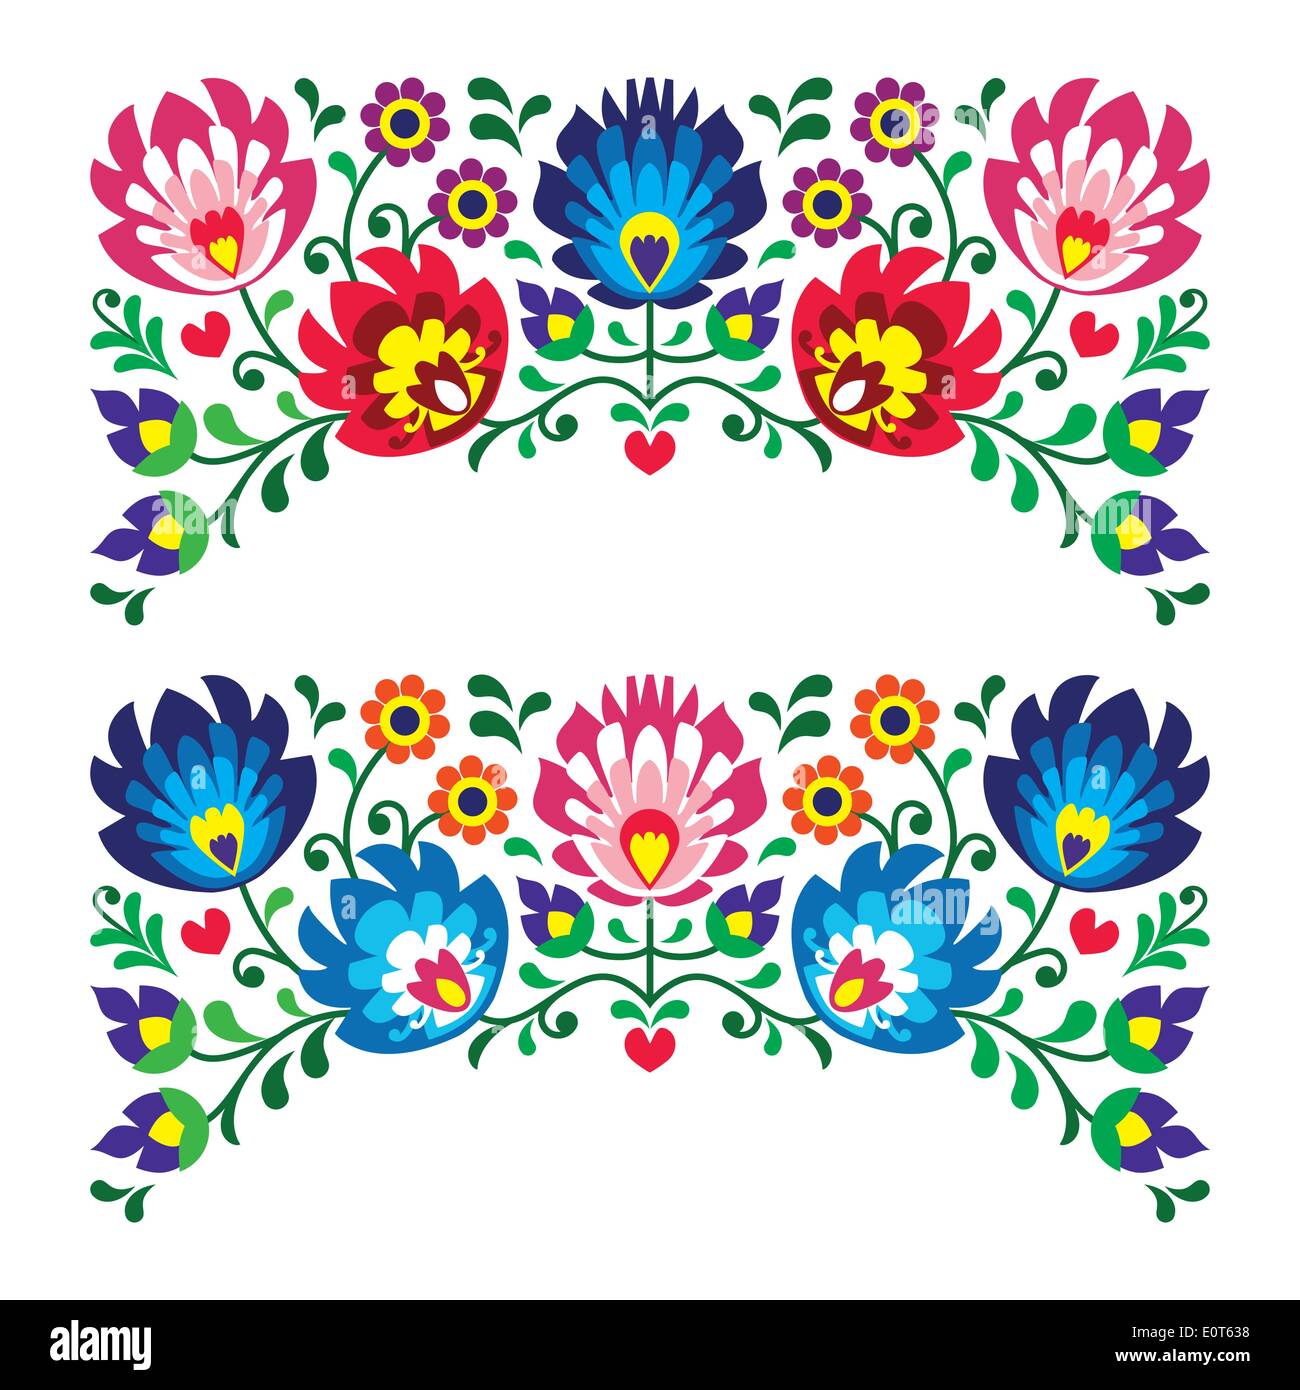 Polish folk art floral pour les motifs de broderie - carte wzory lowickie wycinanki, vecteur traditionnel sous forme de modèle Pologne - isolat style papier découpé Illustration de Vecteur